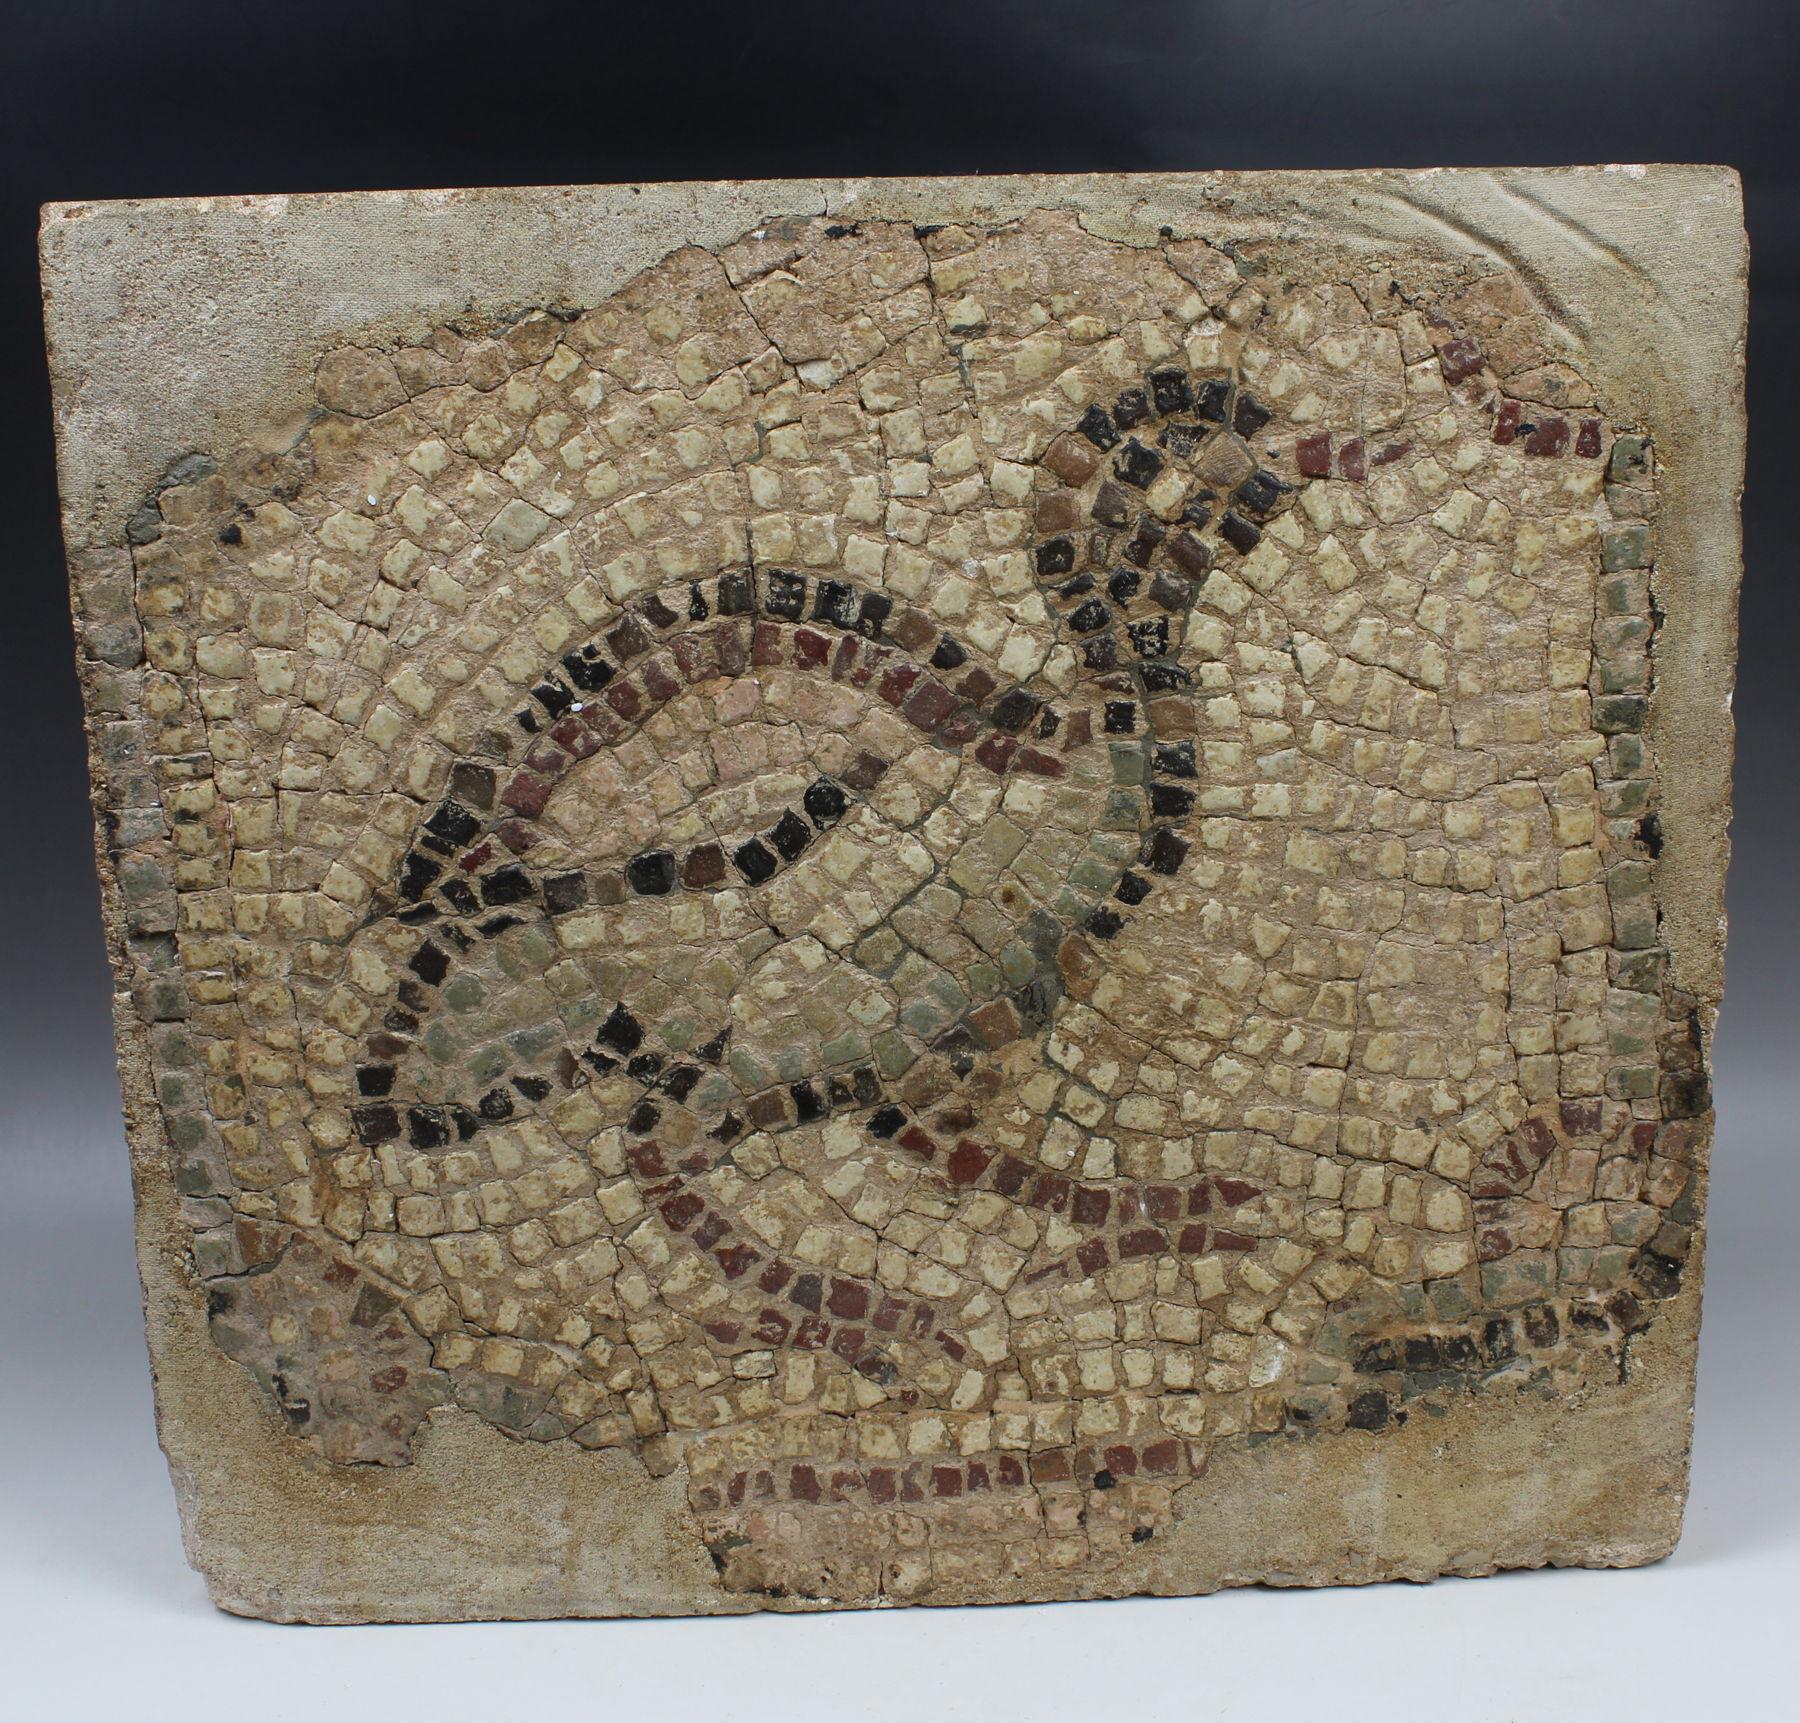 Classical Roman Roman mosaic depicting a bird